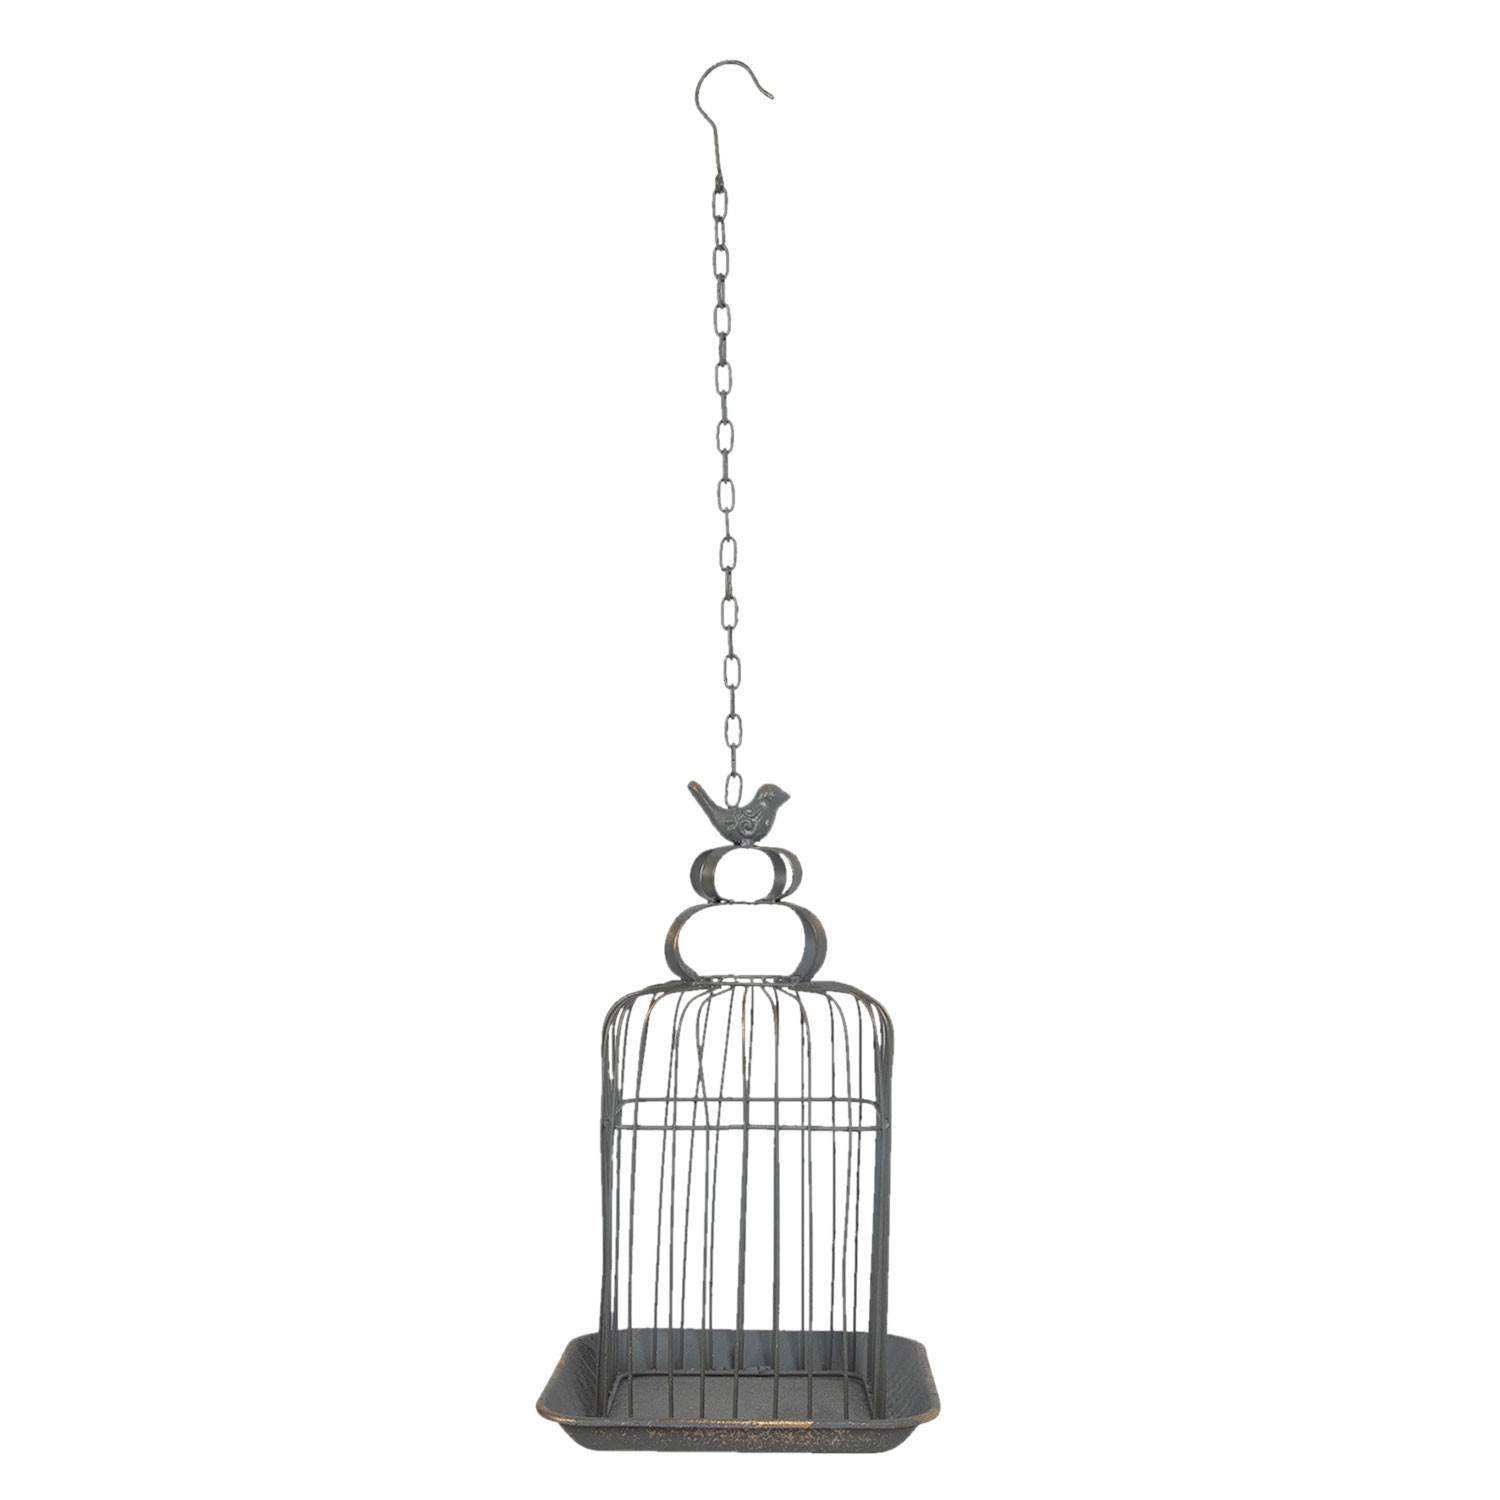 Kovová dekorativní závěsná šedá klec s ptáčkem a patinou - 27*27*46 cm 6Y3925